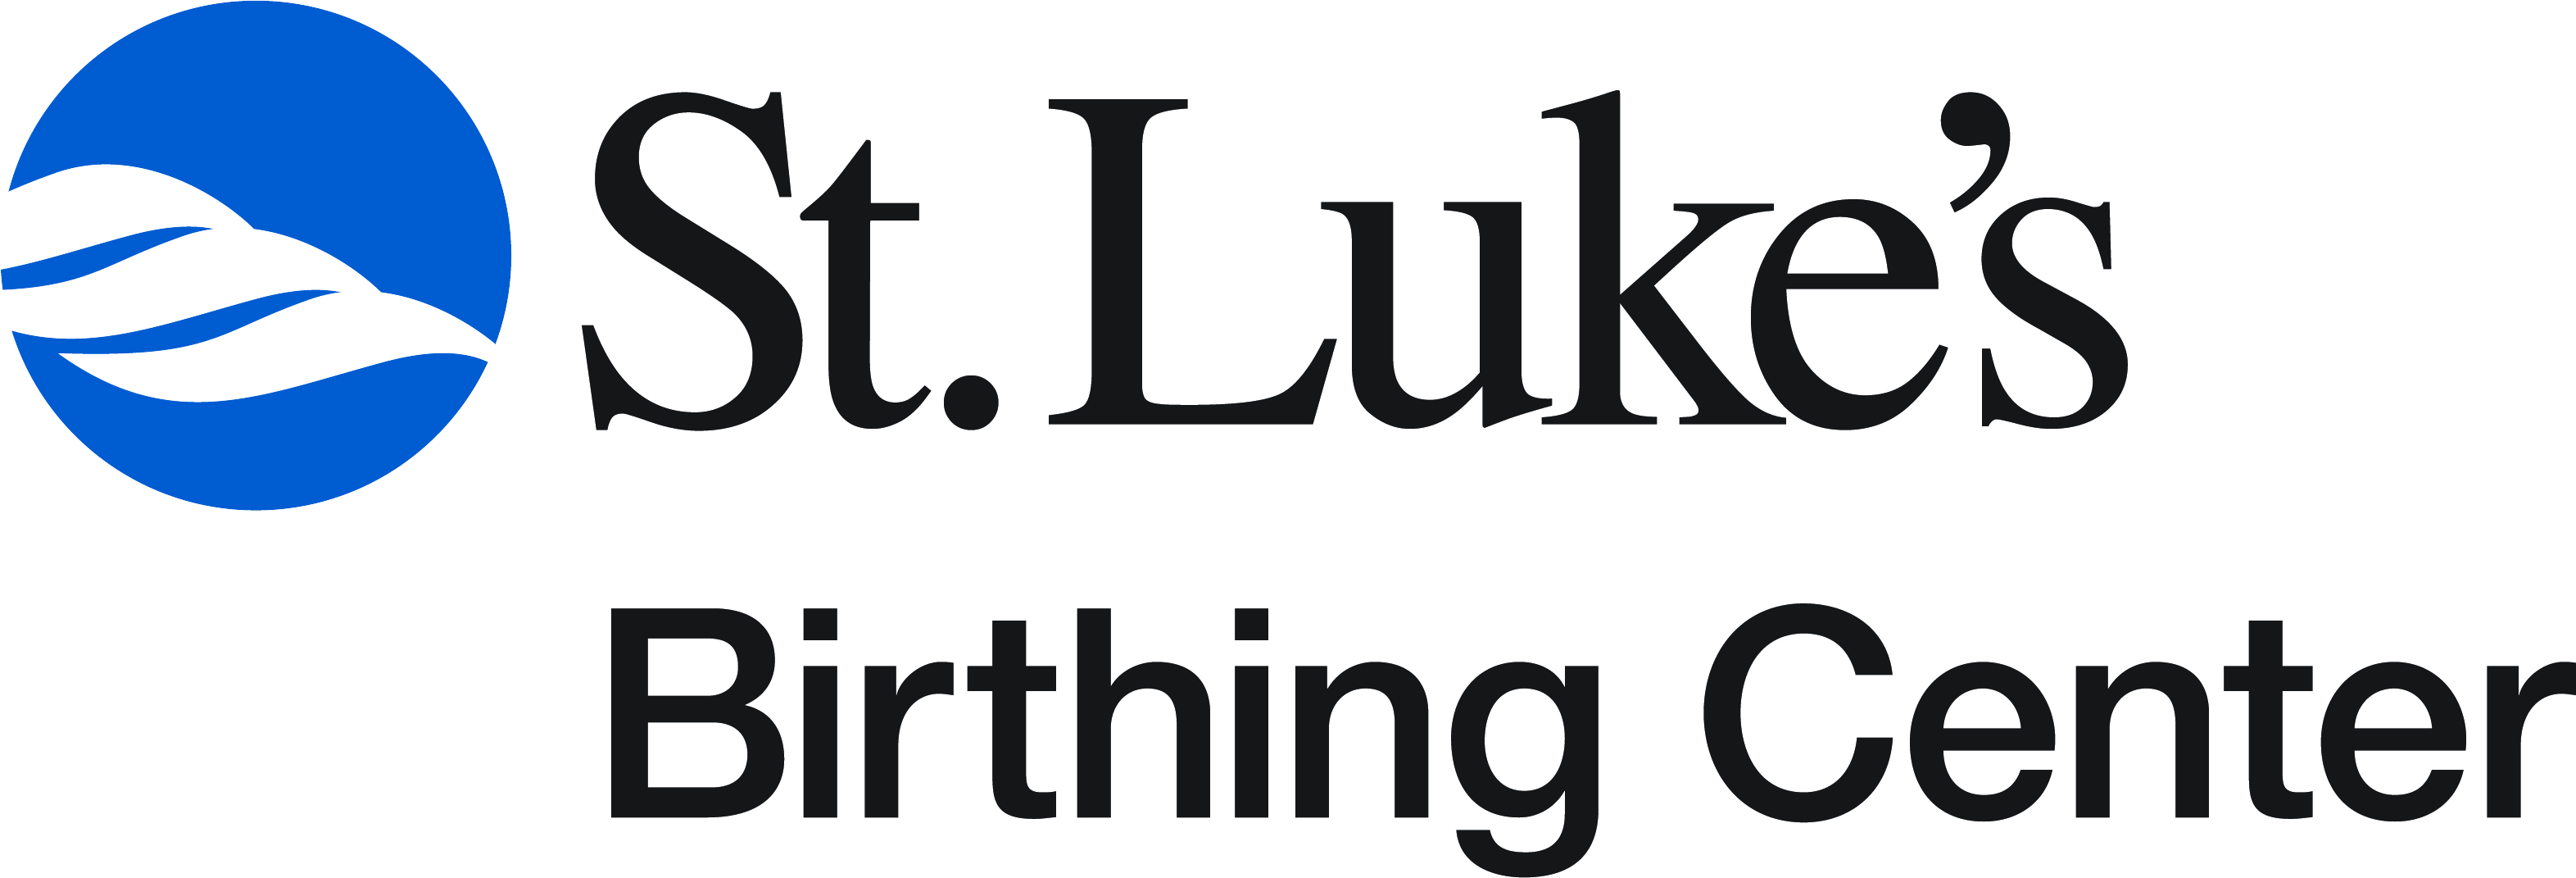 St. Luke’s Birthing Center logo